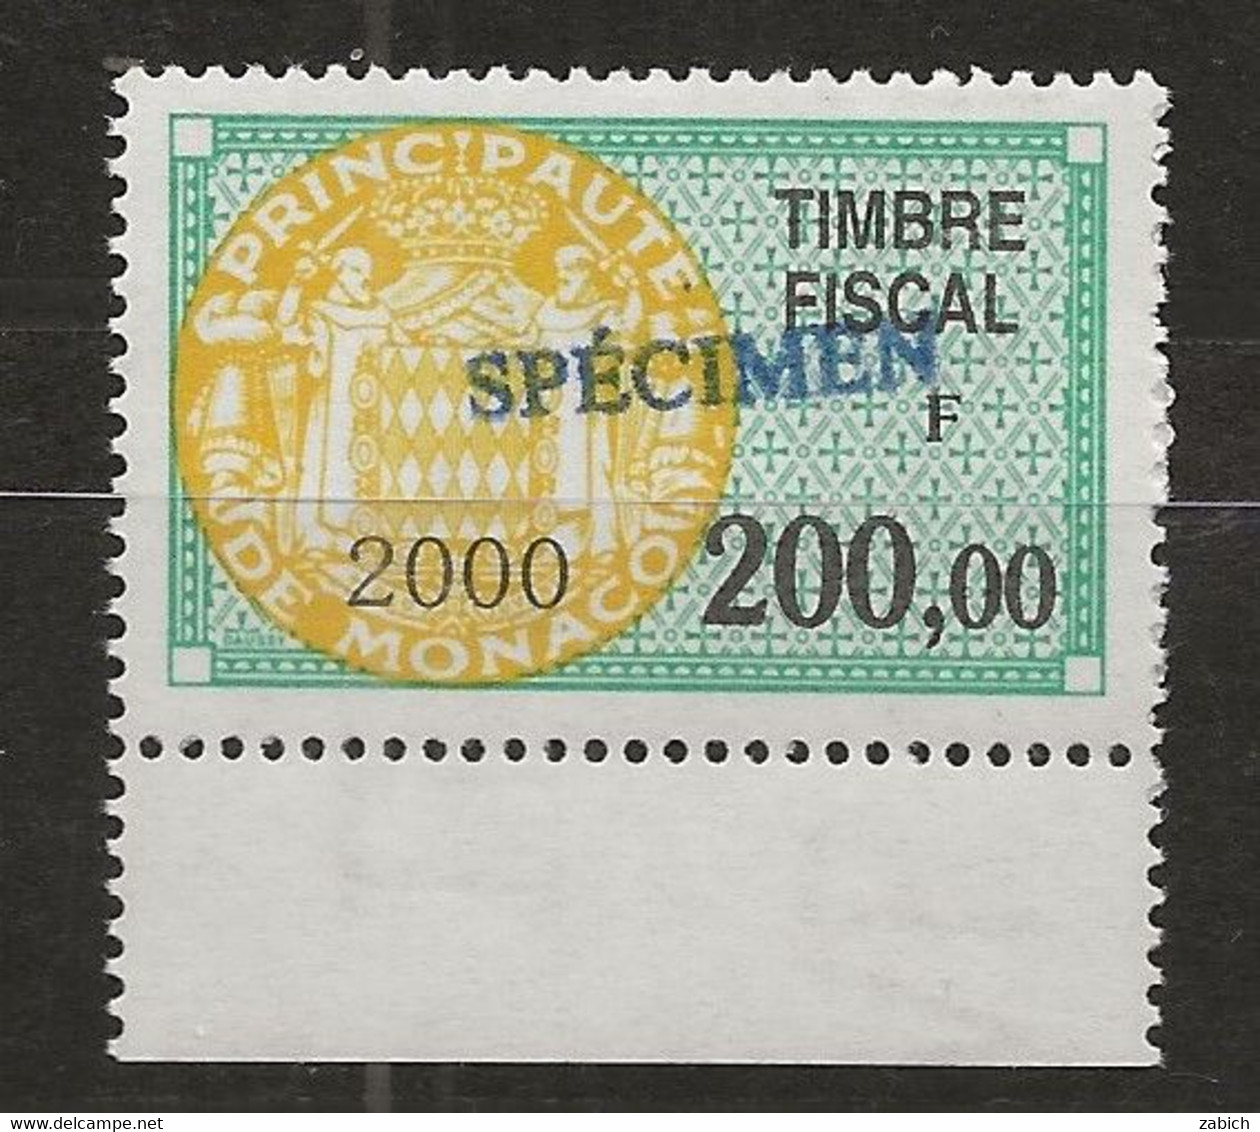 TIMBRES FISCAUX DE MONACO SERIE UNIFIEE N°98 200F Vert, Jaune 2000 Rare Surchargé Spécimen Neuf Gomme Mnh (**) - Fiscali